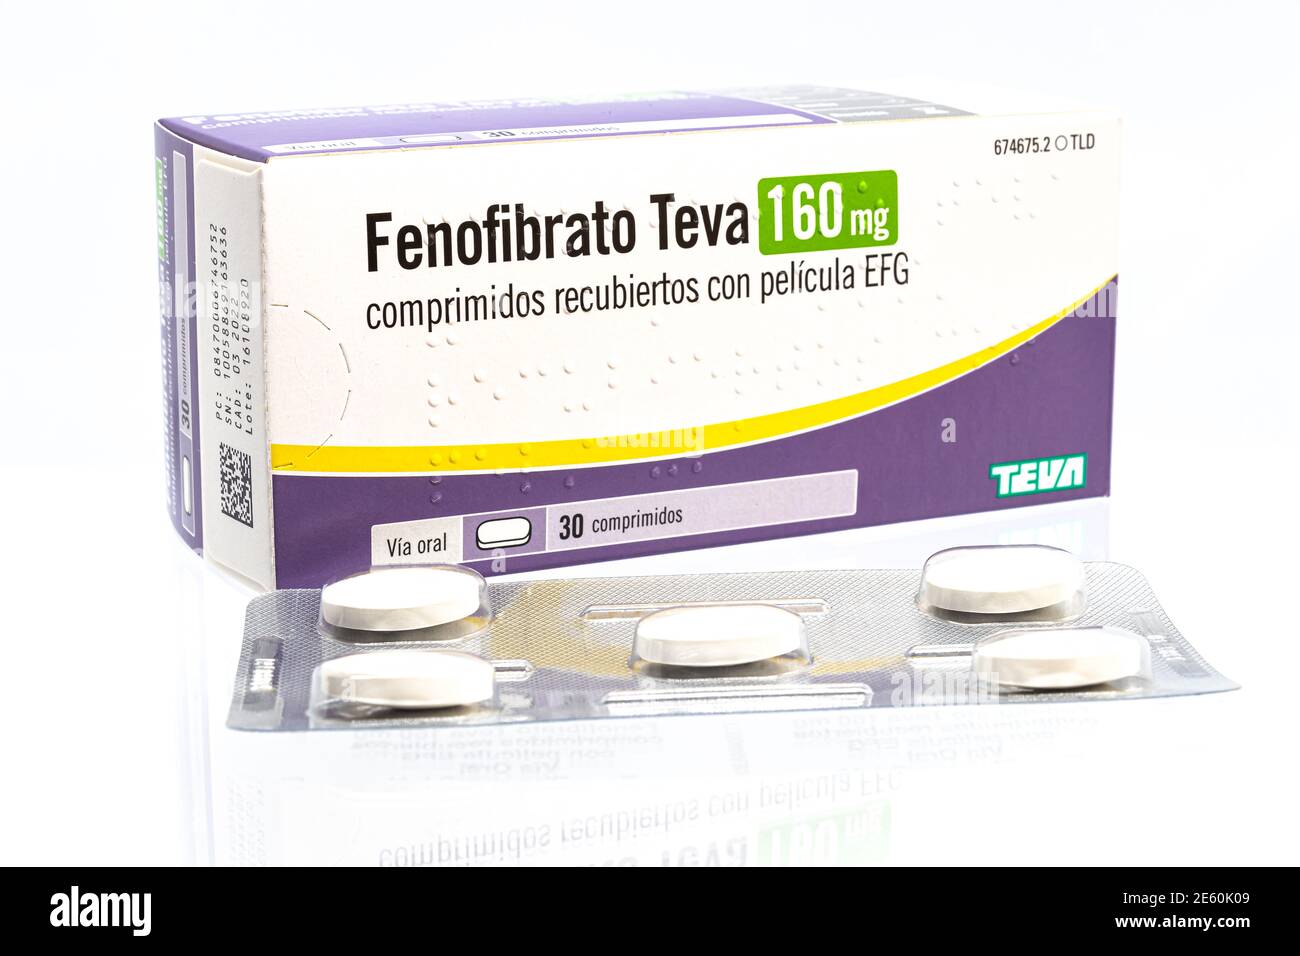 Huelva, Espagne - 25 janvier 2021: Spanish Box of Fenofibrate marque Teva, est un médicament de la classe de fibrate utilisé pour traiter le taux anormal de lipides dans le sang Banque D'Images